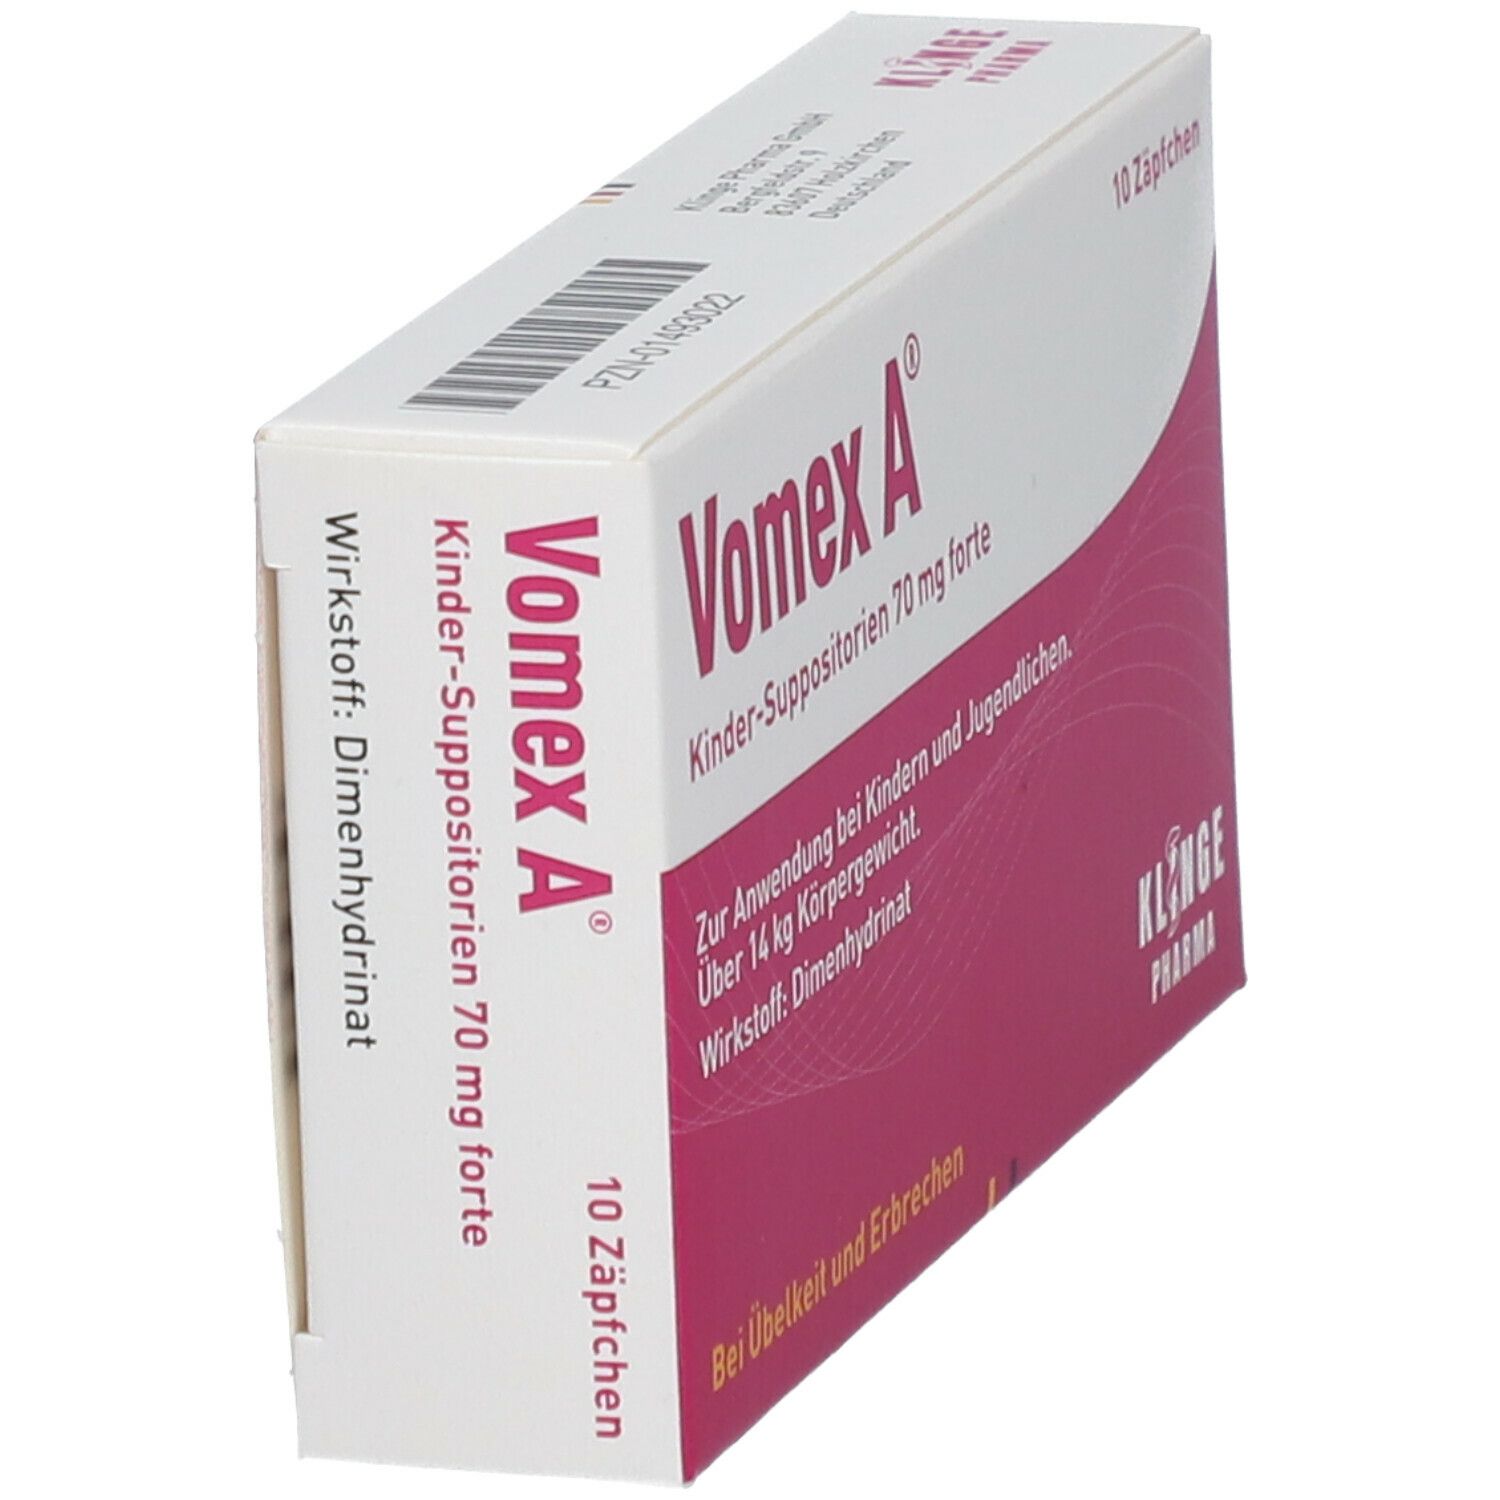 Vomex A forte 70 mg Kindersuppositorien